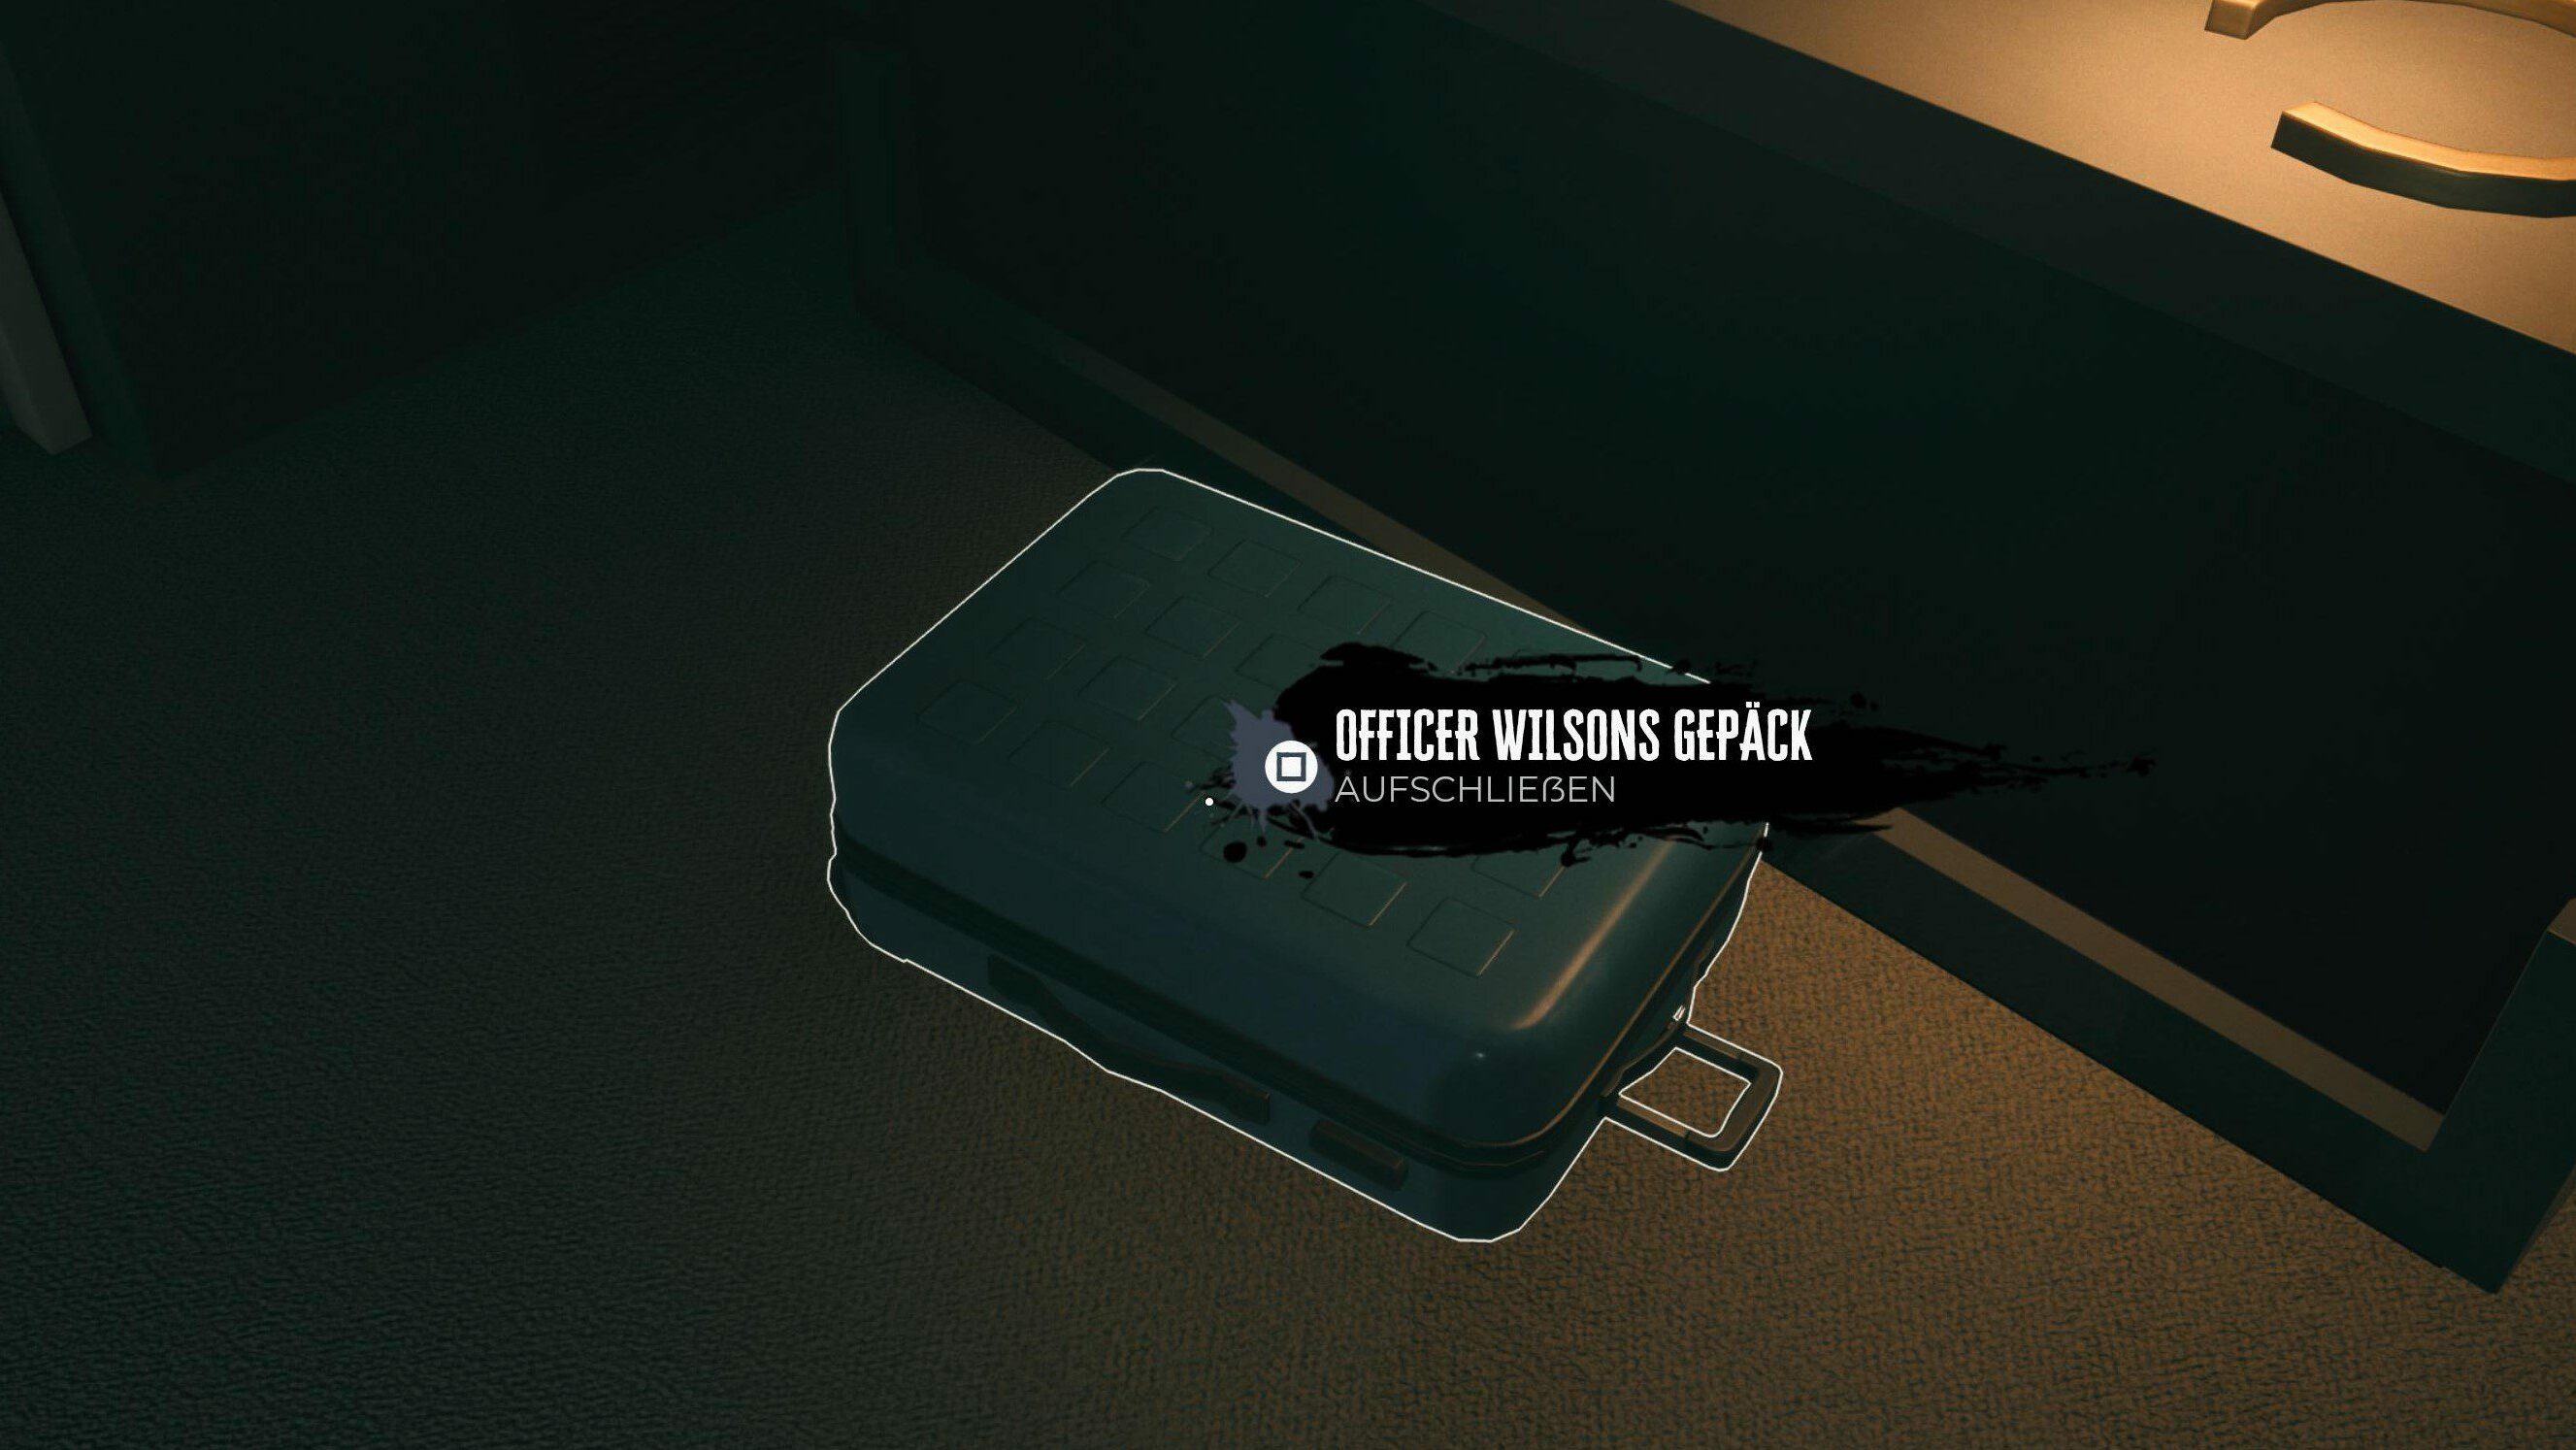 Dead Island 2: Officer Wilsons Gepäck – Kofferschlüssel des Mall-Cops